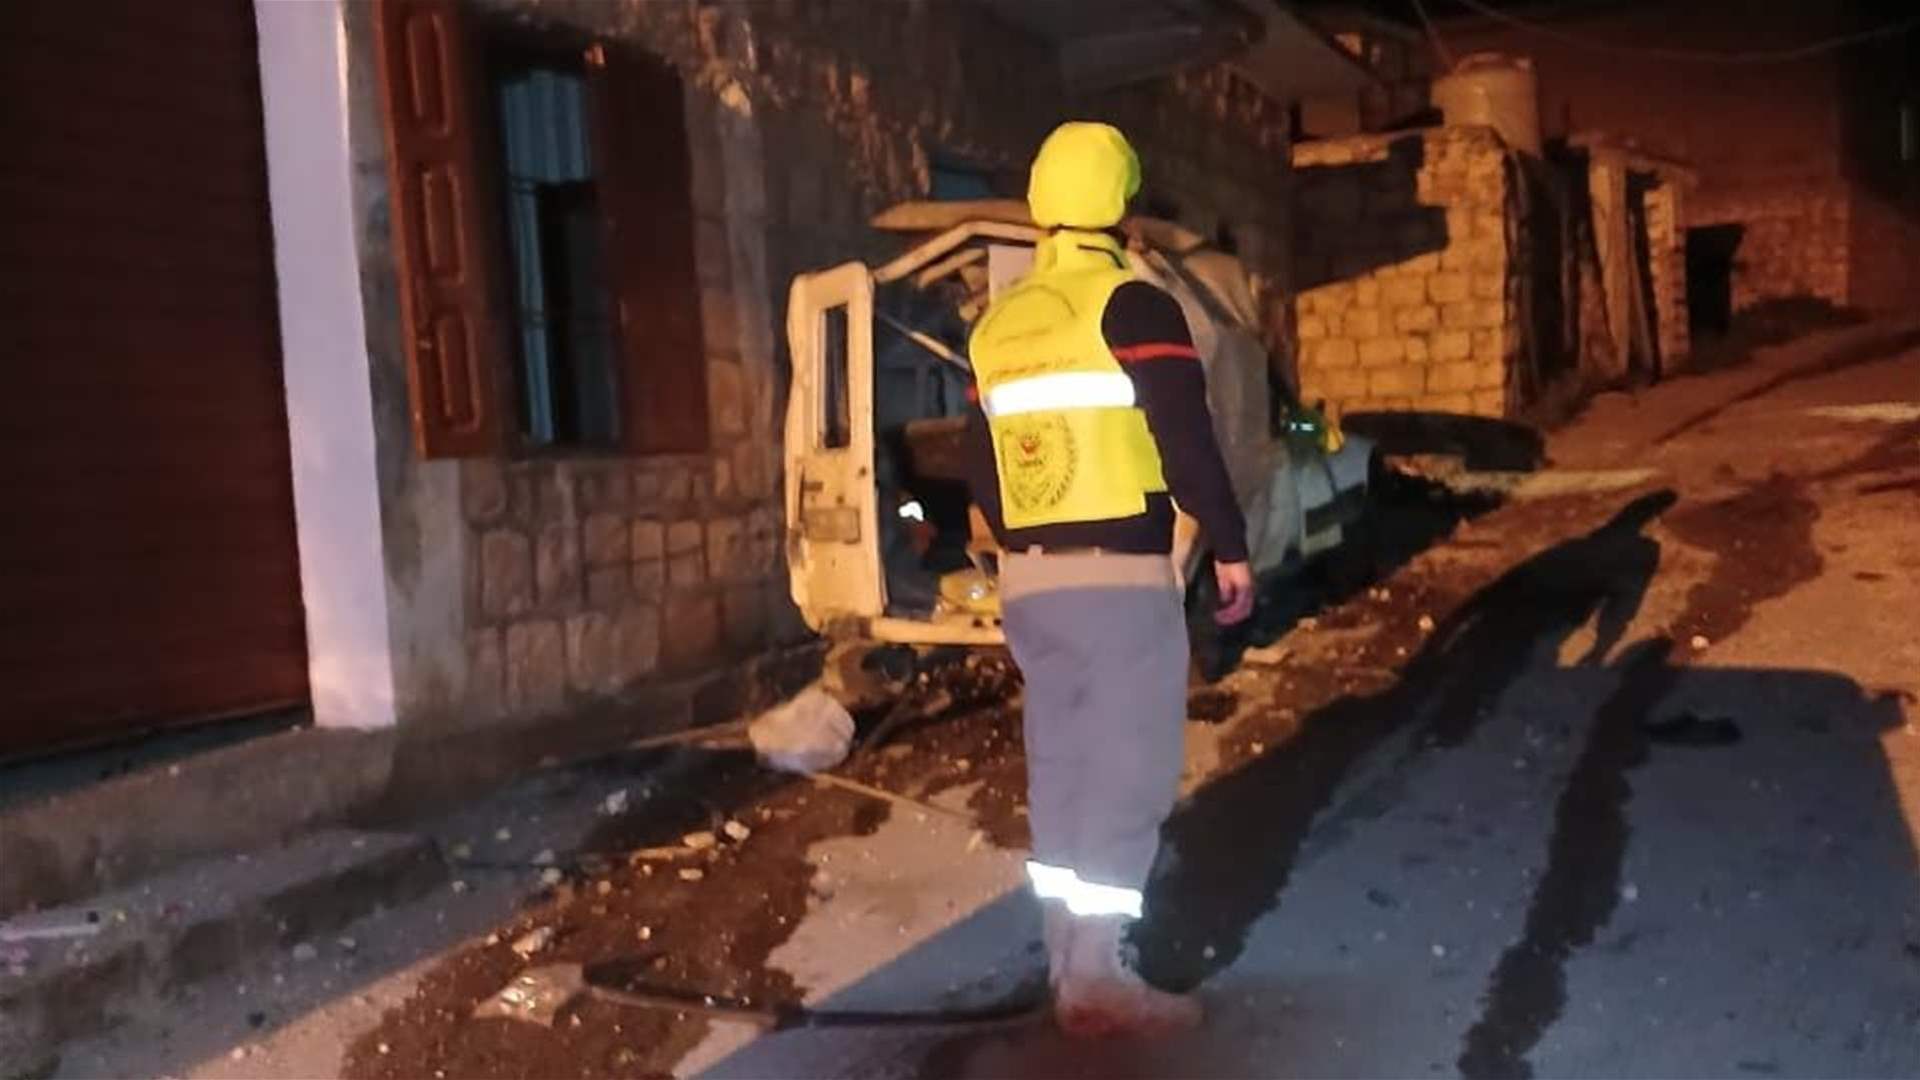 قصف مدفعي استهدف باحة مسجد في حولا ما أدى إلى استشهاد احد المواطنين وجرح ستة مواطنين بينهم أطفال